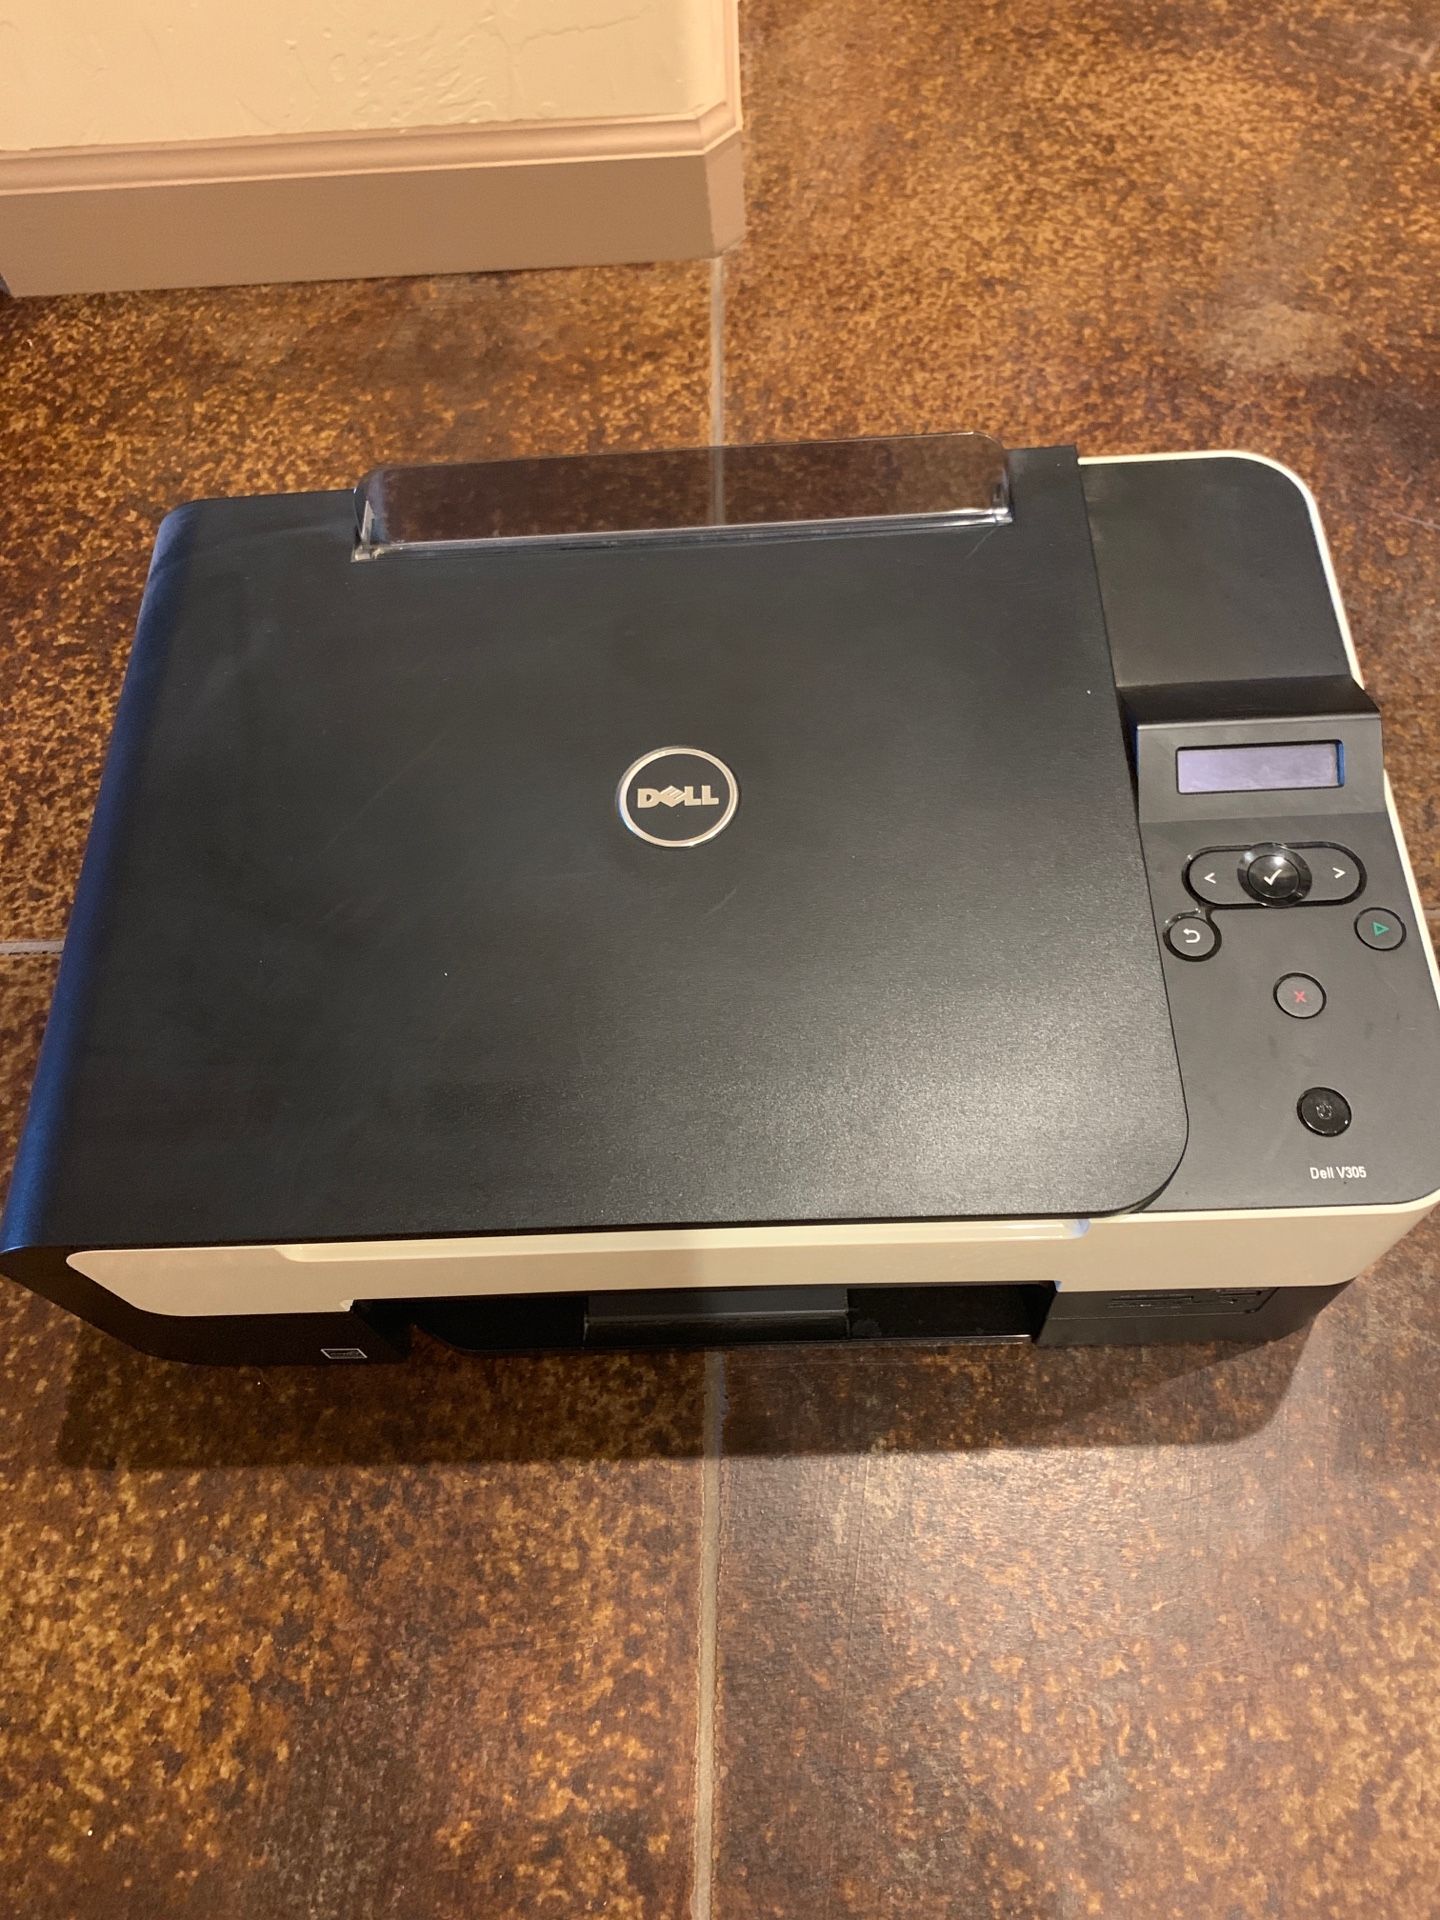 Dell 3 in one Printer